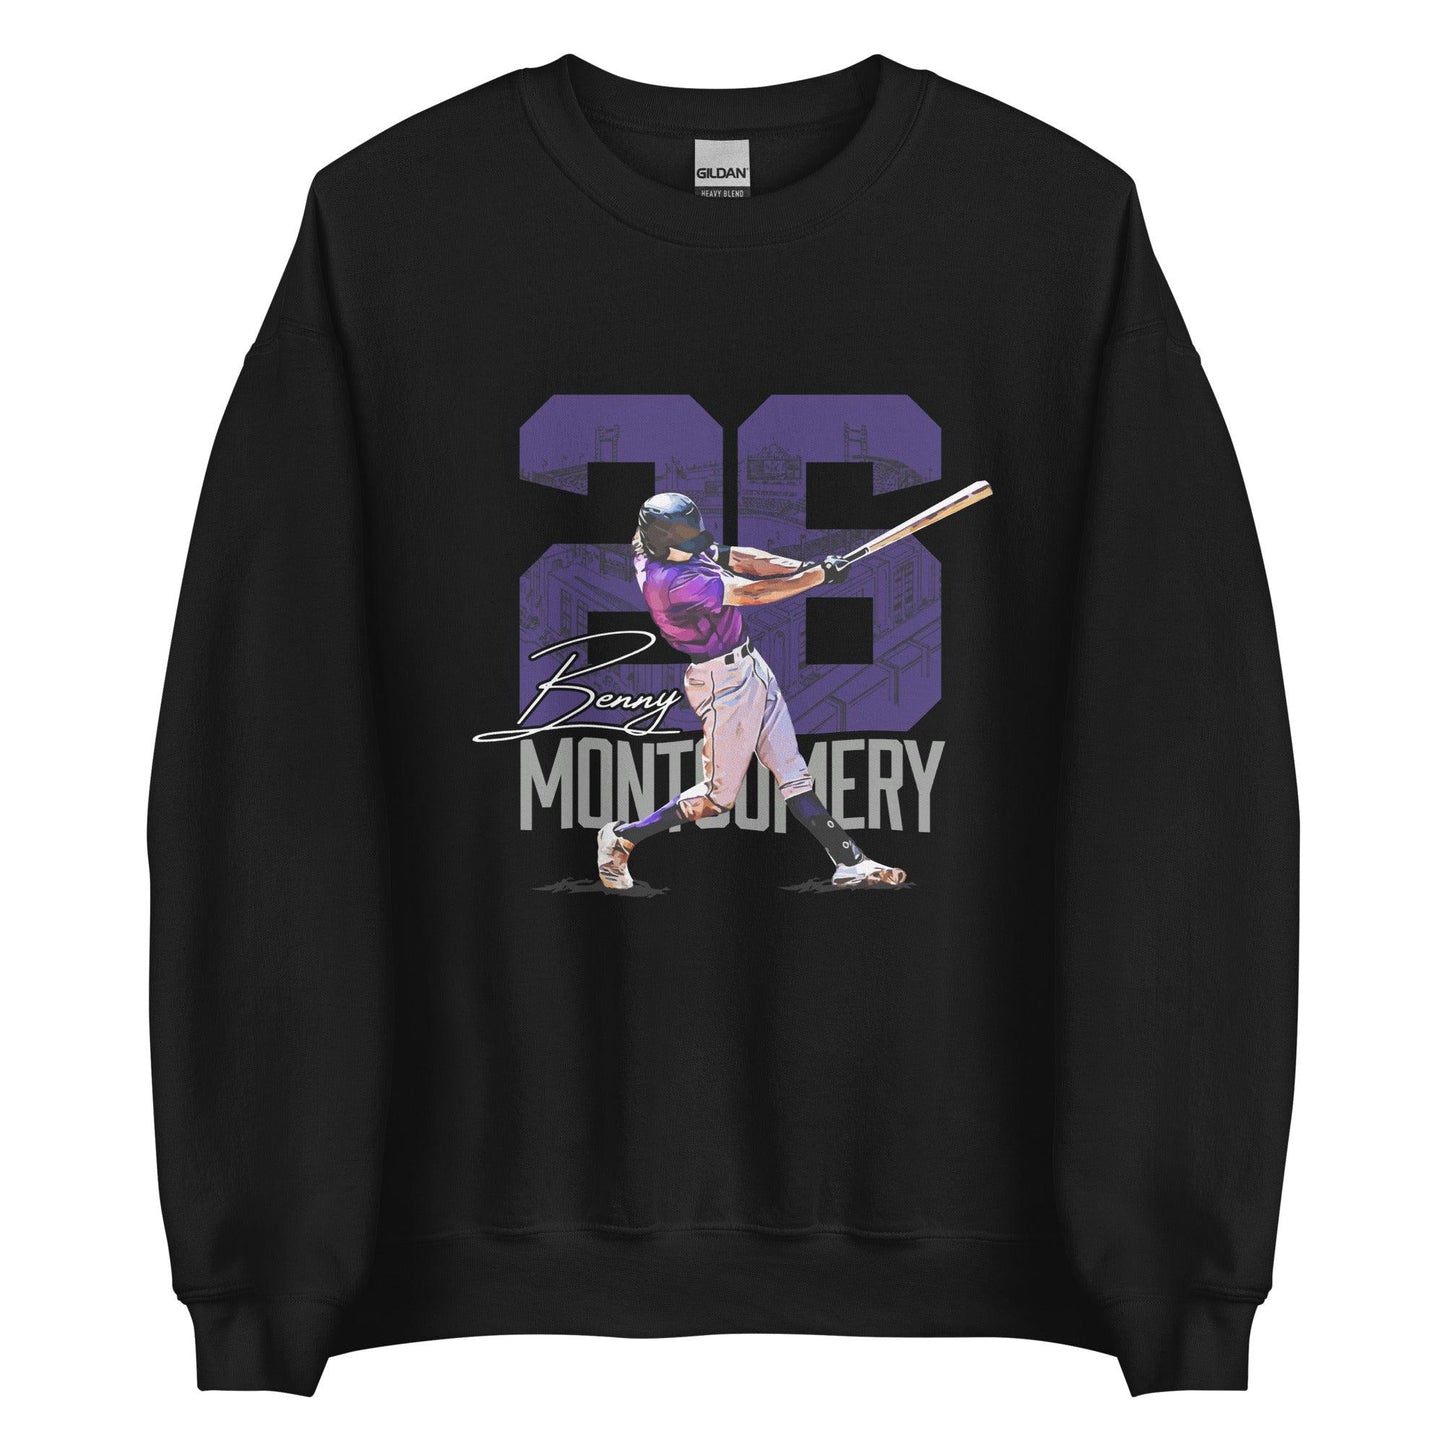 Benny Montgomery "Gameday" Sweatshirt - Fan Arch